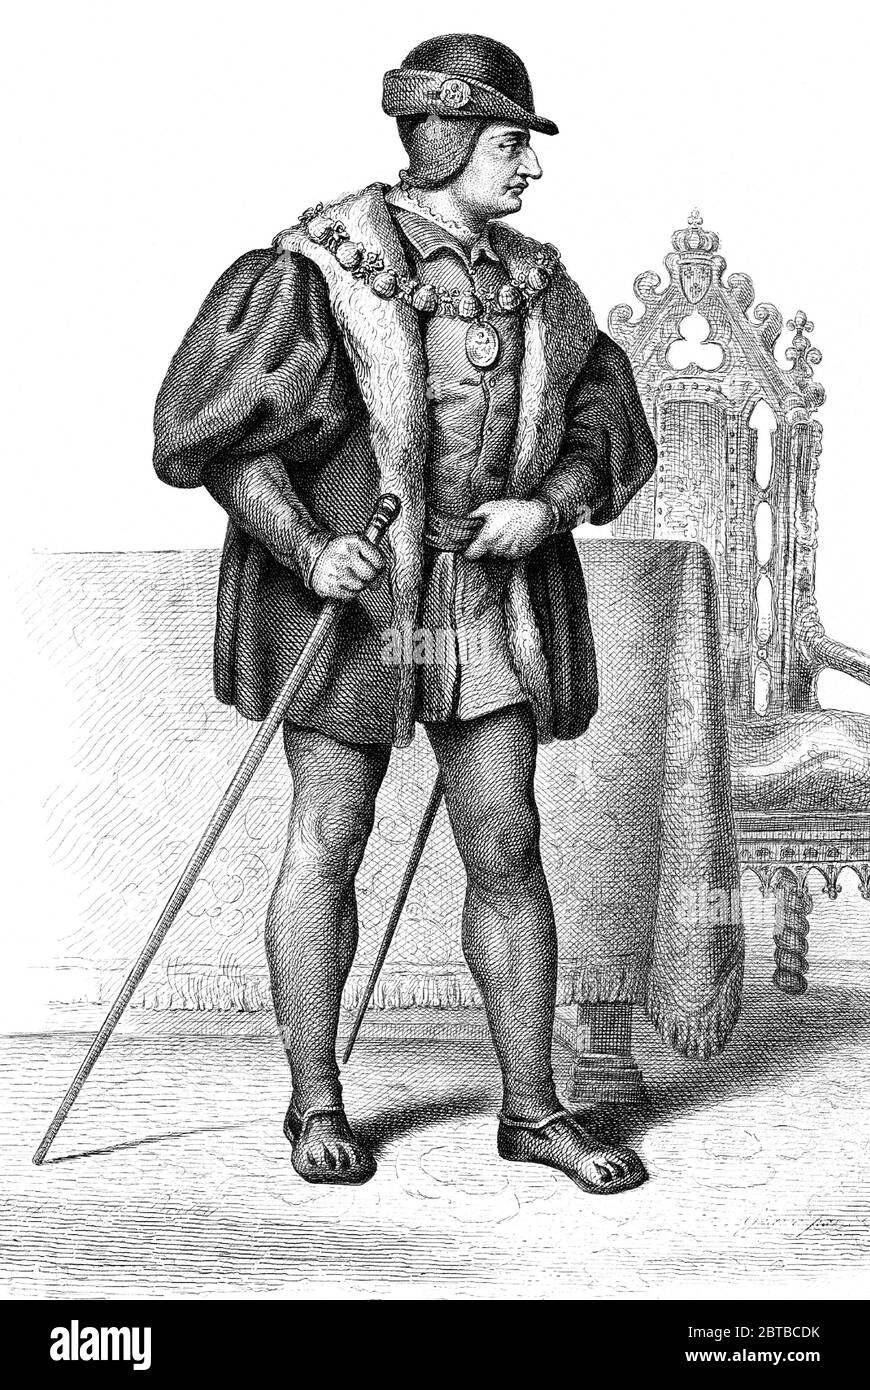 1480 ca, FRANCIA: Il re francese LUIGI XI Valois (1423-1483) dit le Prudent . Padre di Re Carlo VIII . Ritratto di incrimente sconosciuto , pubblicato nel 1845 .- NOBILTÀ - NOBILI francesi - Nobiltà francese - FRANCIA - illustrazione - illustrazione - incisione - LUIGI XI Re di Francia --- ARCHIVIO GBB Foto Stock